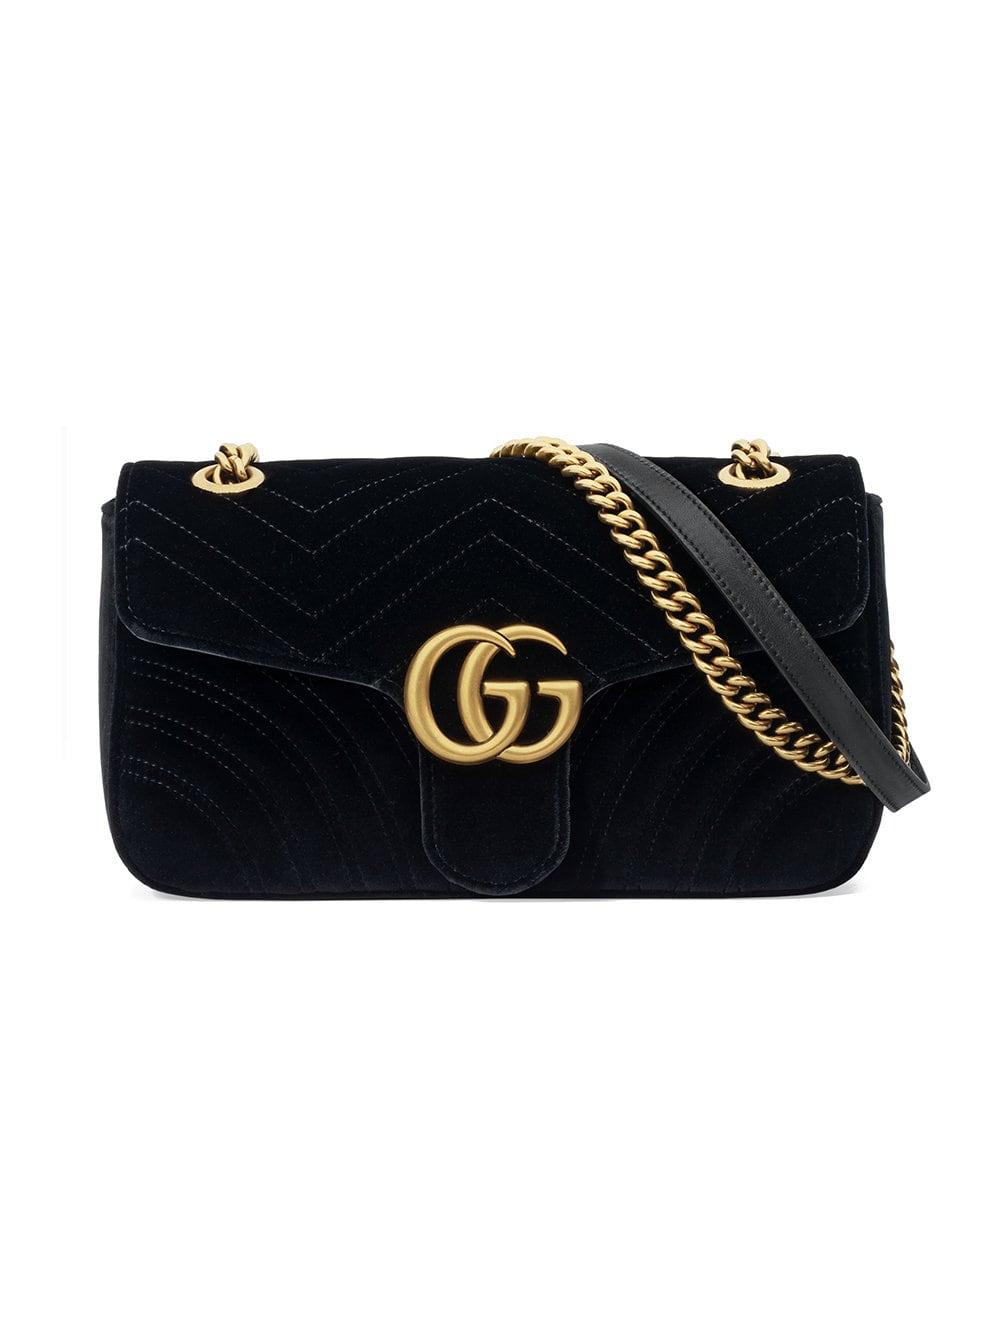 Gucci GG Marmont Velvet Shoulder Bag in Black | Lyst